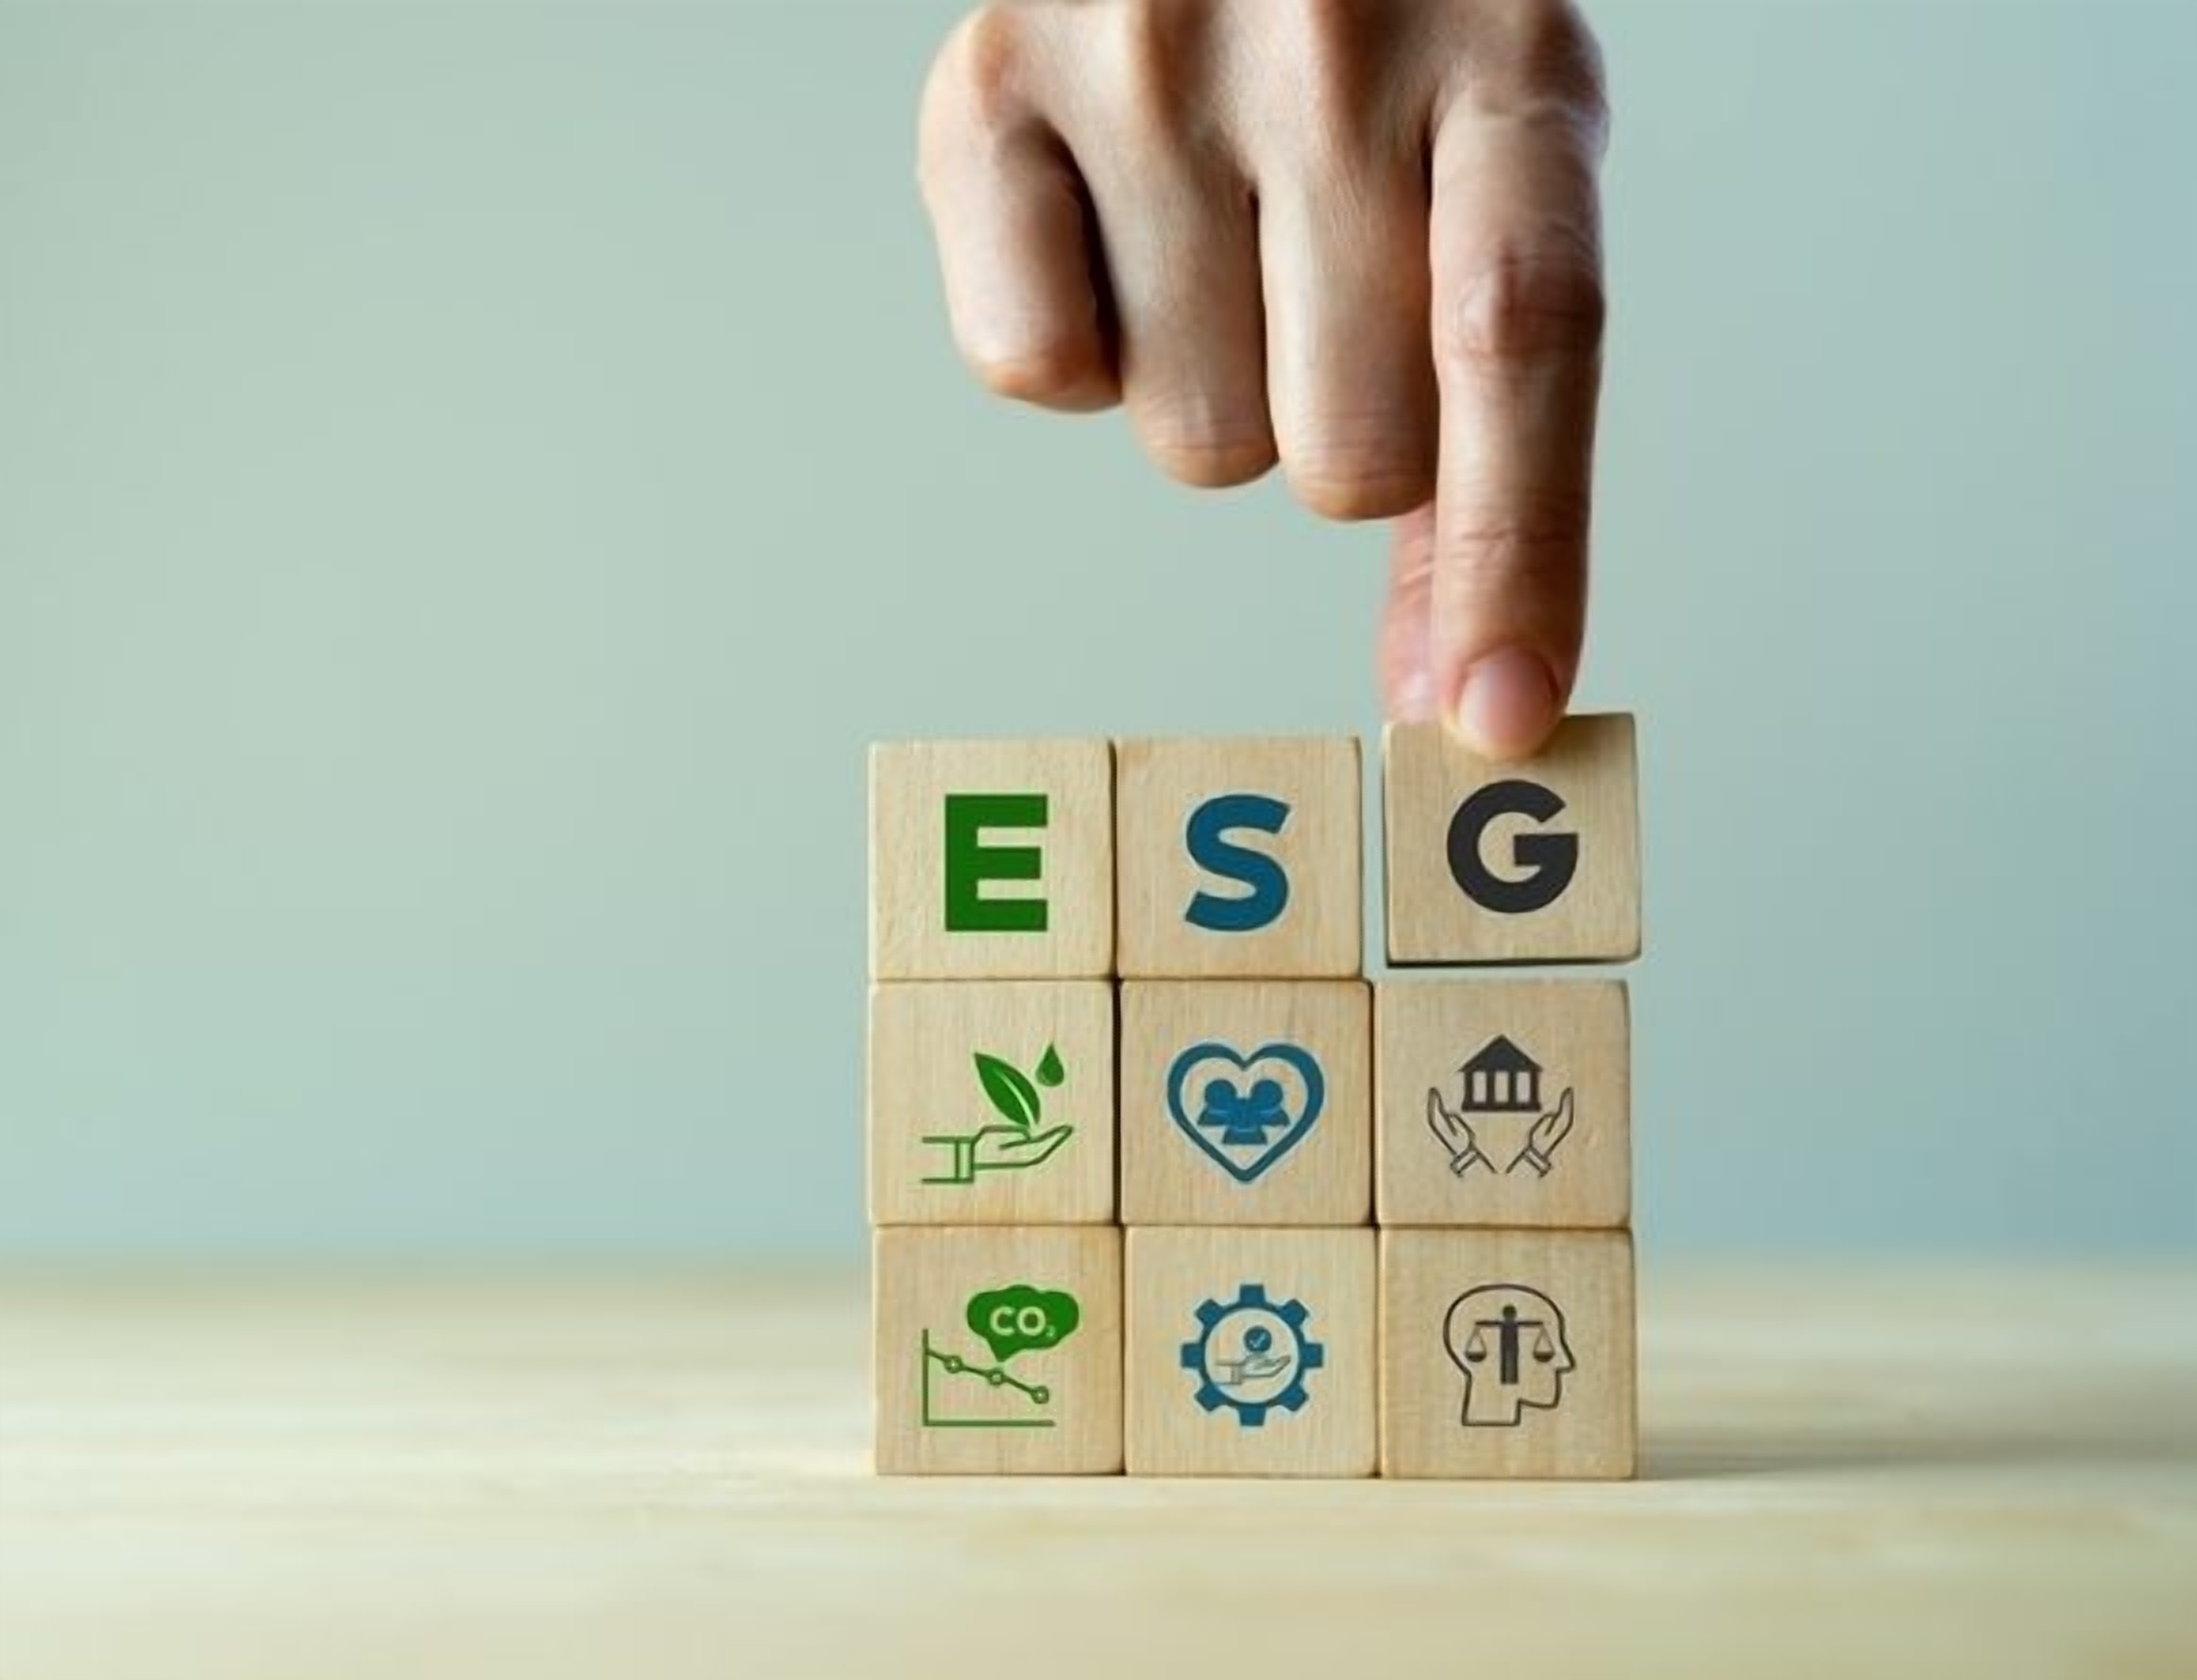 PVH Boosts ESG Goals Through Supplier Financing